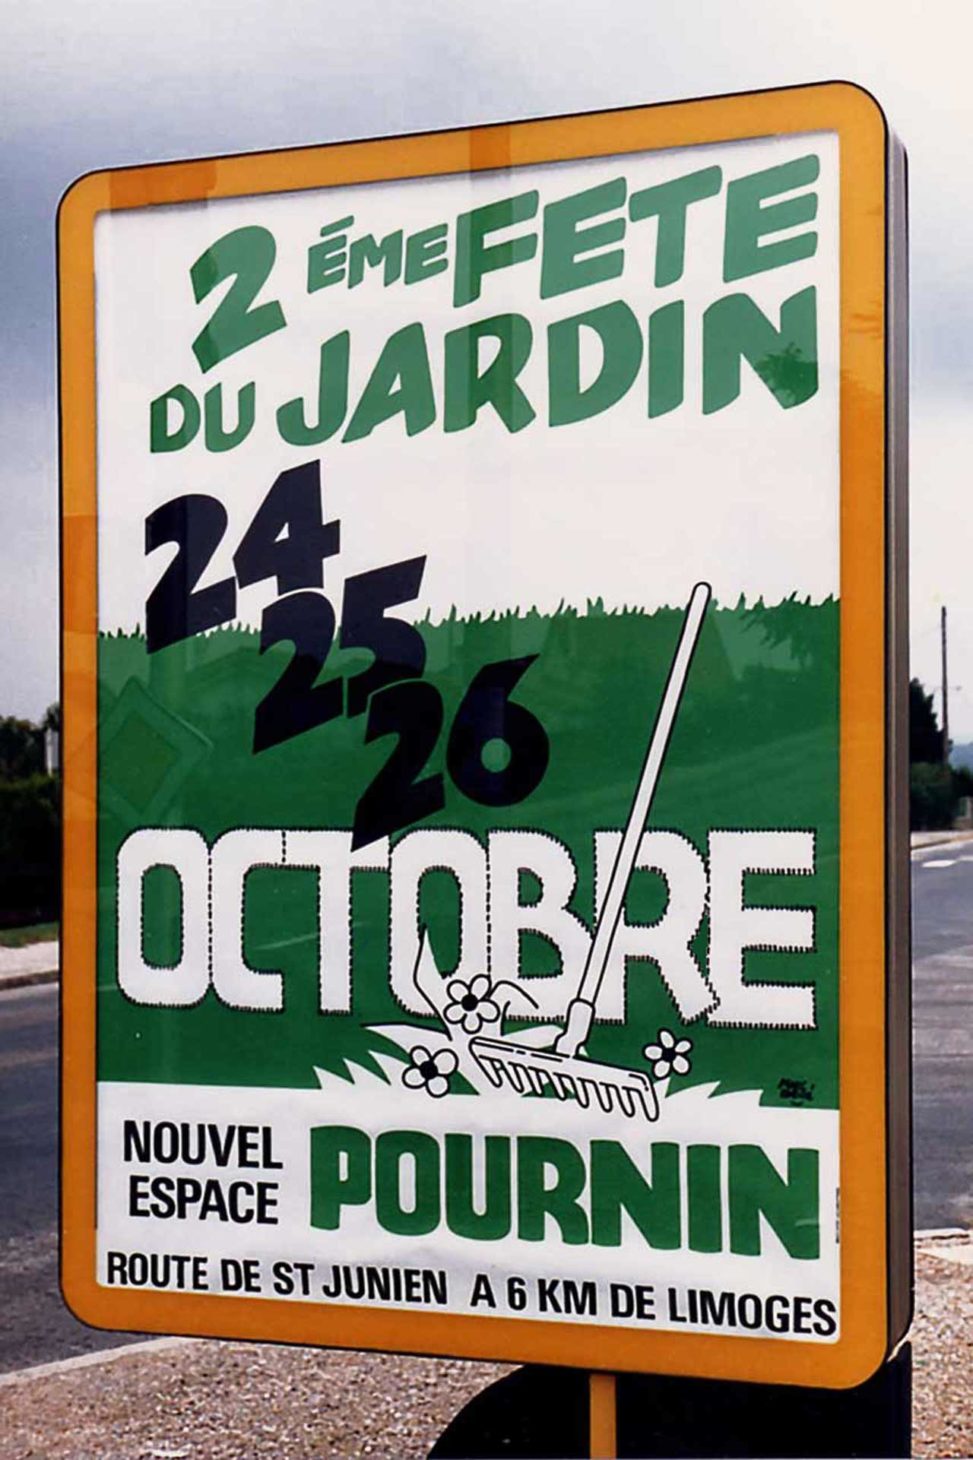 Pournin-affiche-120x175-2ème-fête-du-jardin-1986.jpg